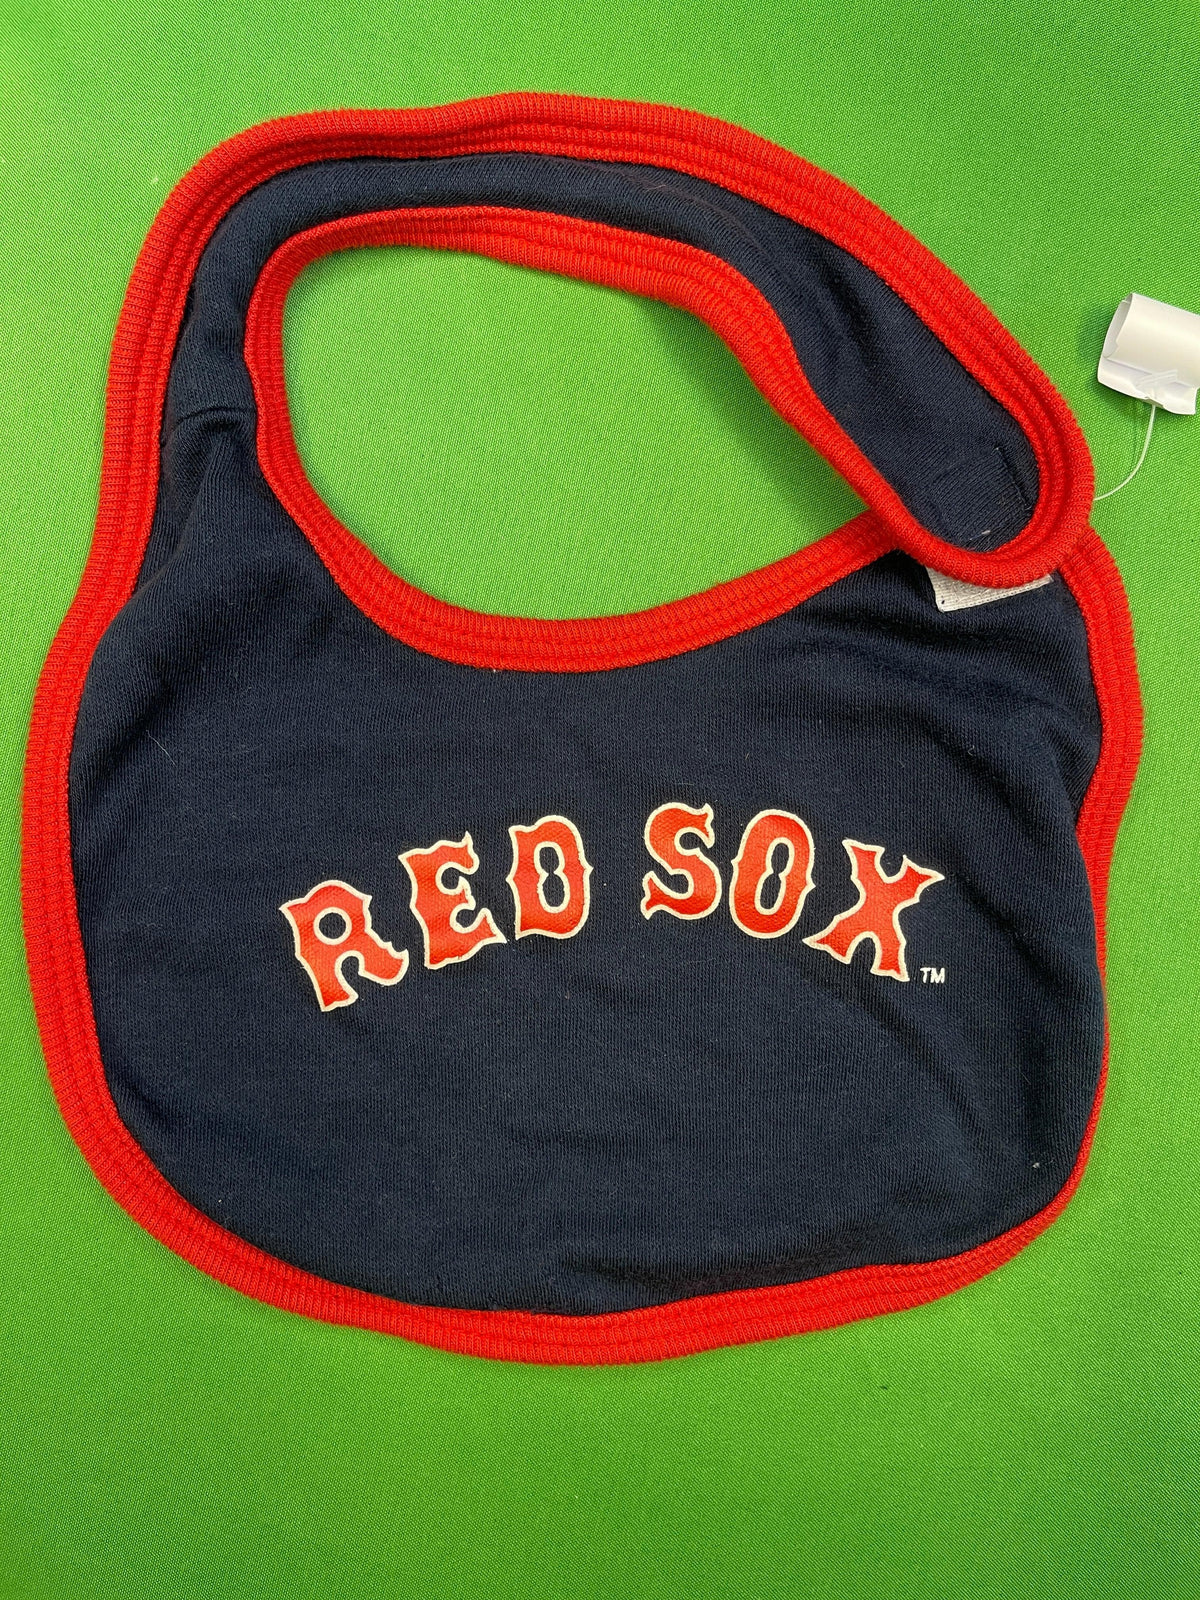 MLB Boston Red Sox Infant Baby Bib OSFM